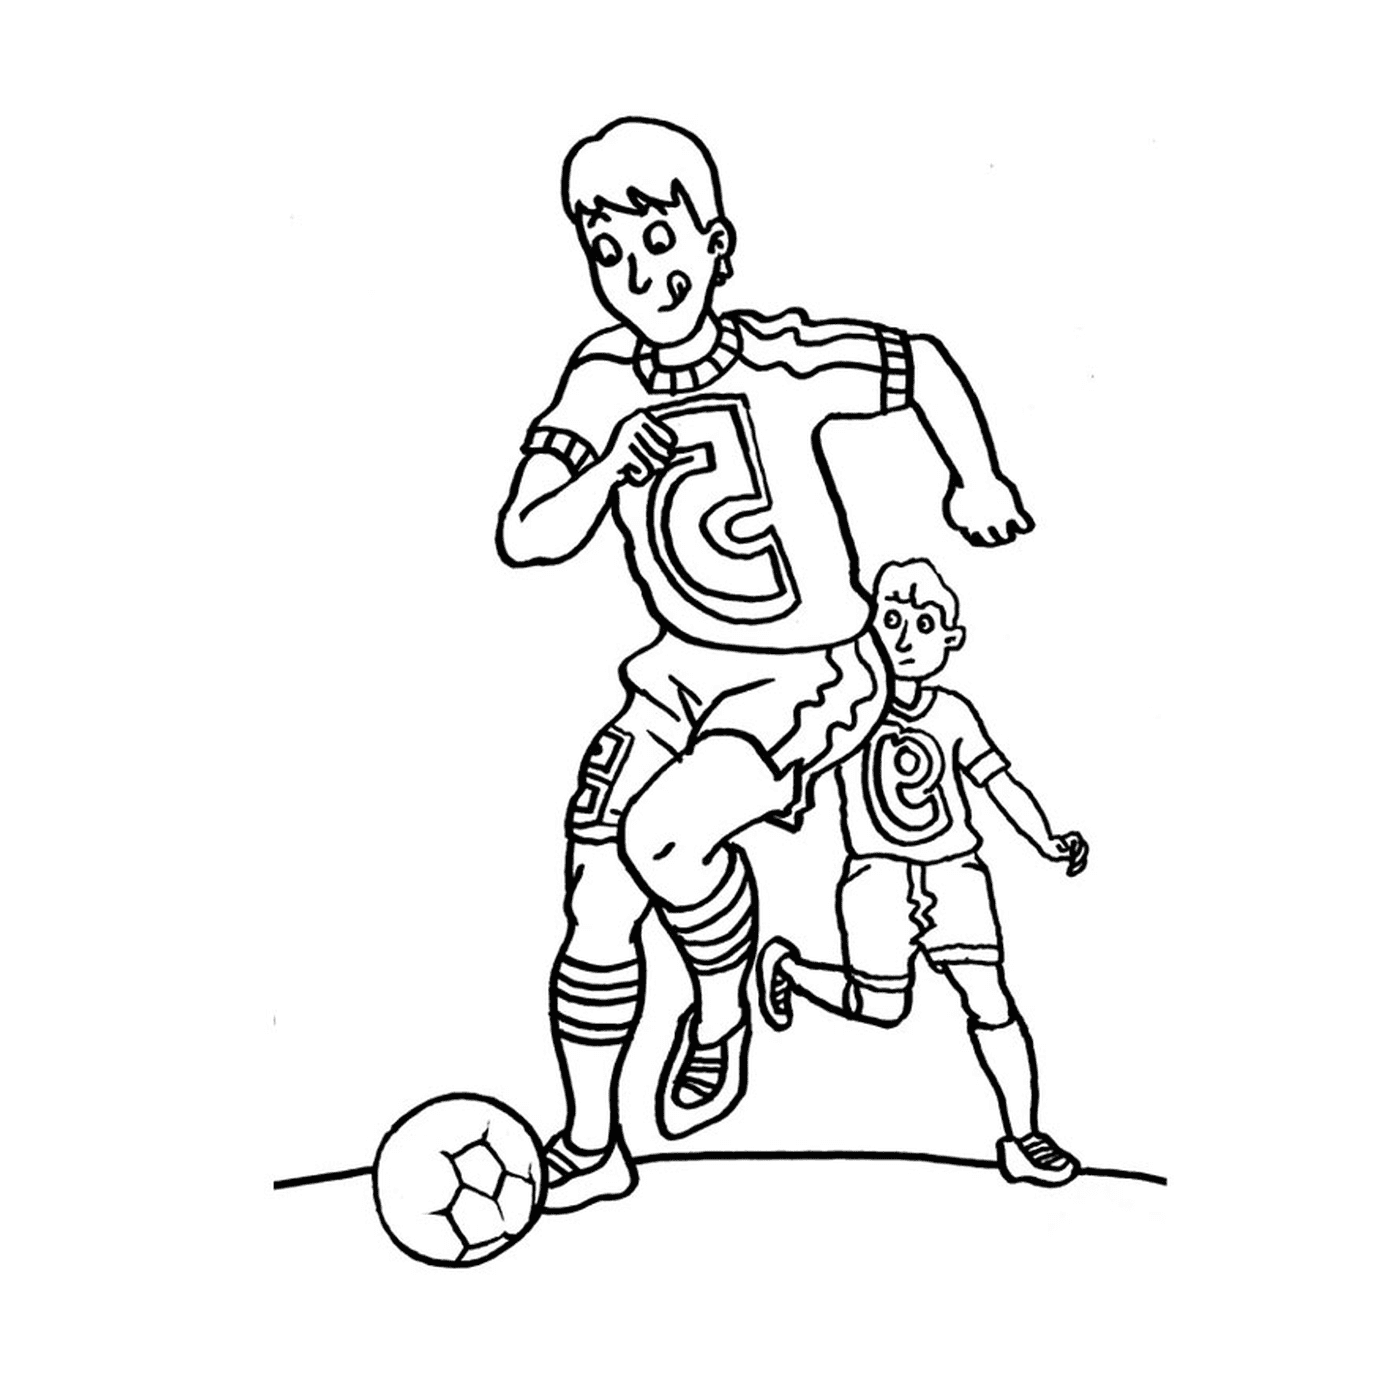  Burdeos juega al fútbol 